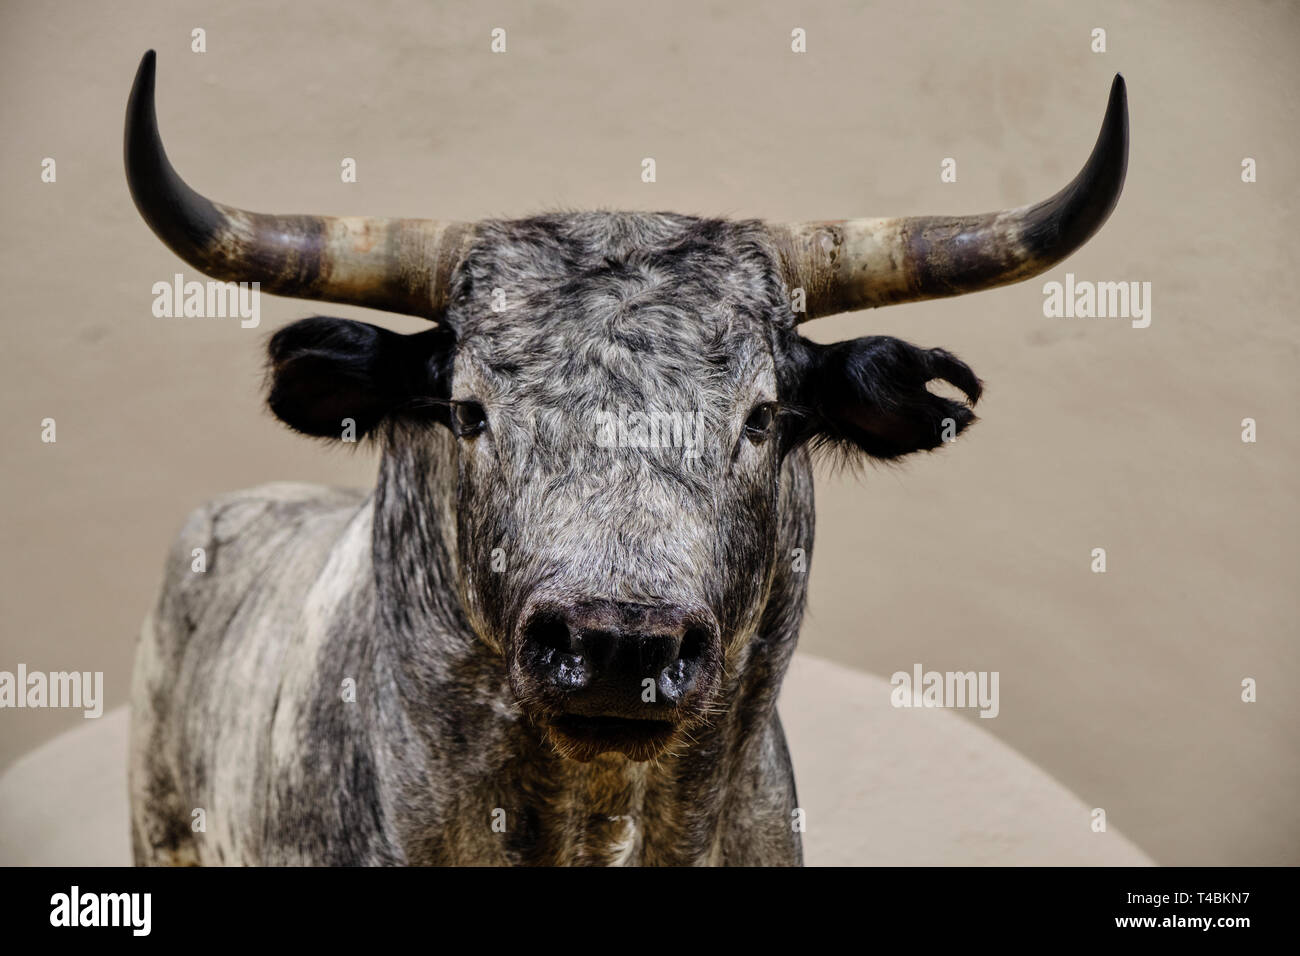 Aprile 2019 Siviglia Spagna - grigio ripiene bull imbalsamare nelle arene della Maestranza di Siviglia Foto Stock